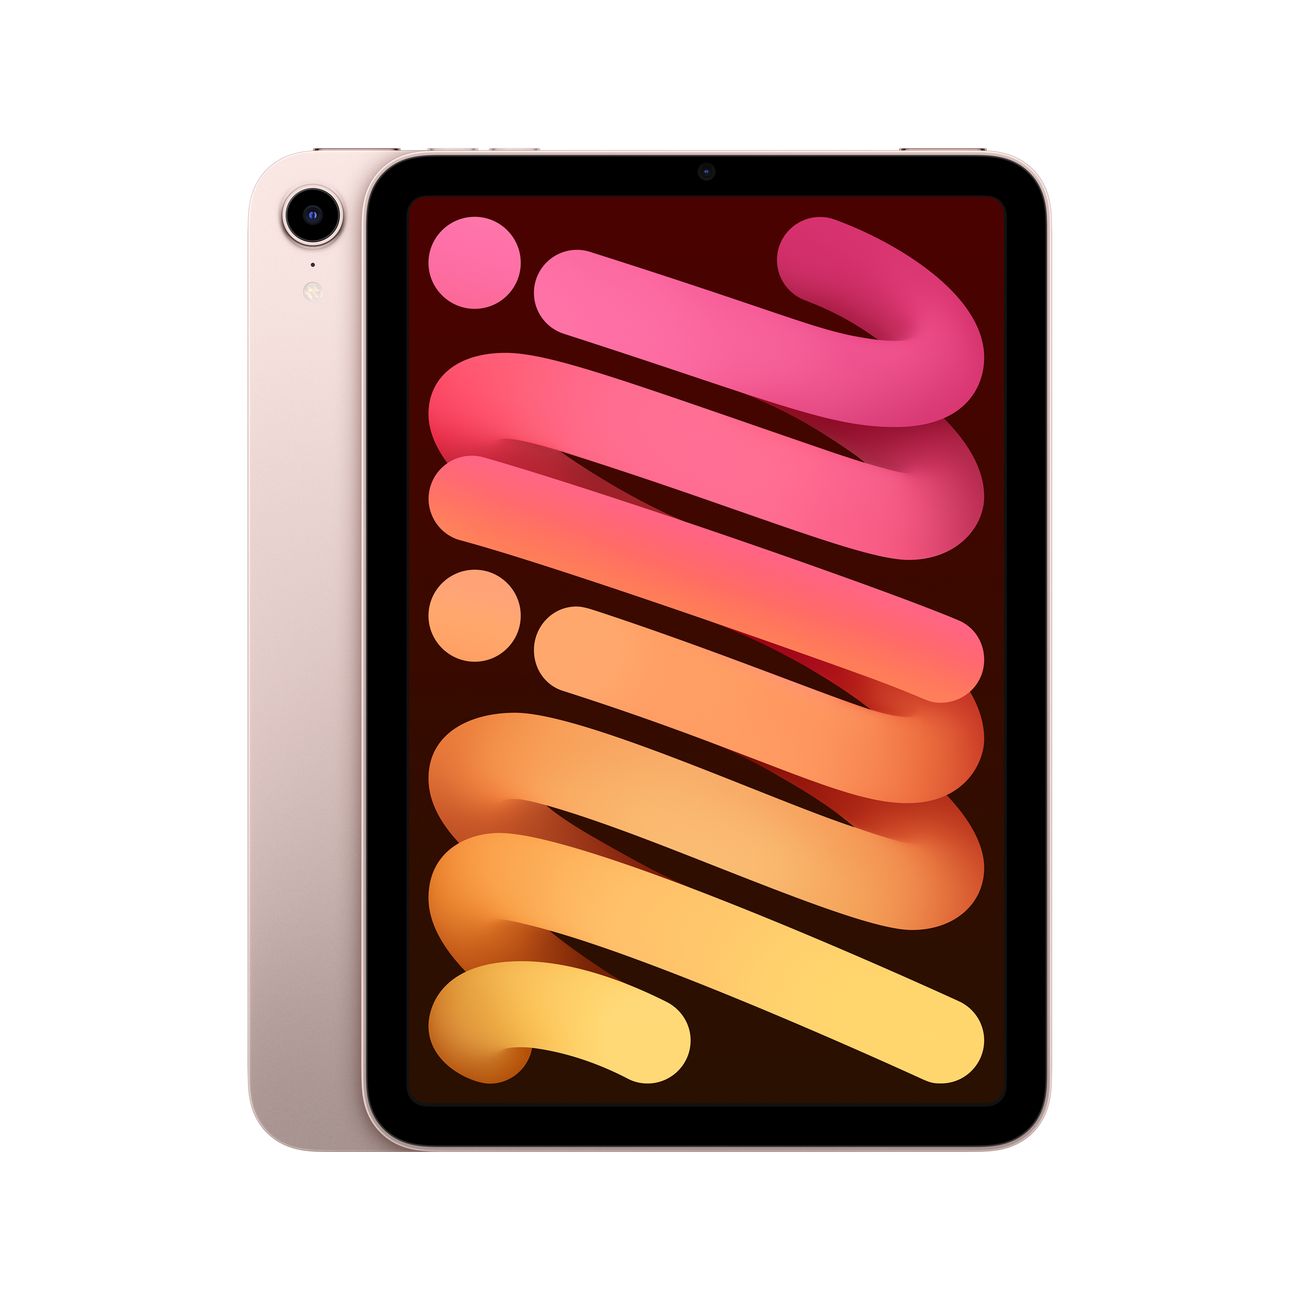 Купить планшет apple ipad mini wi-fi 256gb pink (mlwr3) Apple iPad mini в официальном магазине Apple, Samsung, Xiaomi. iPixel.ru Купить, заказ, кредит, рассрочка, отзывы,  характеристики, цена,  фотографии, в подарок.